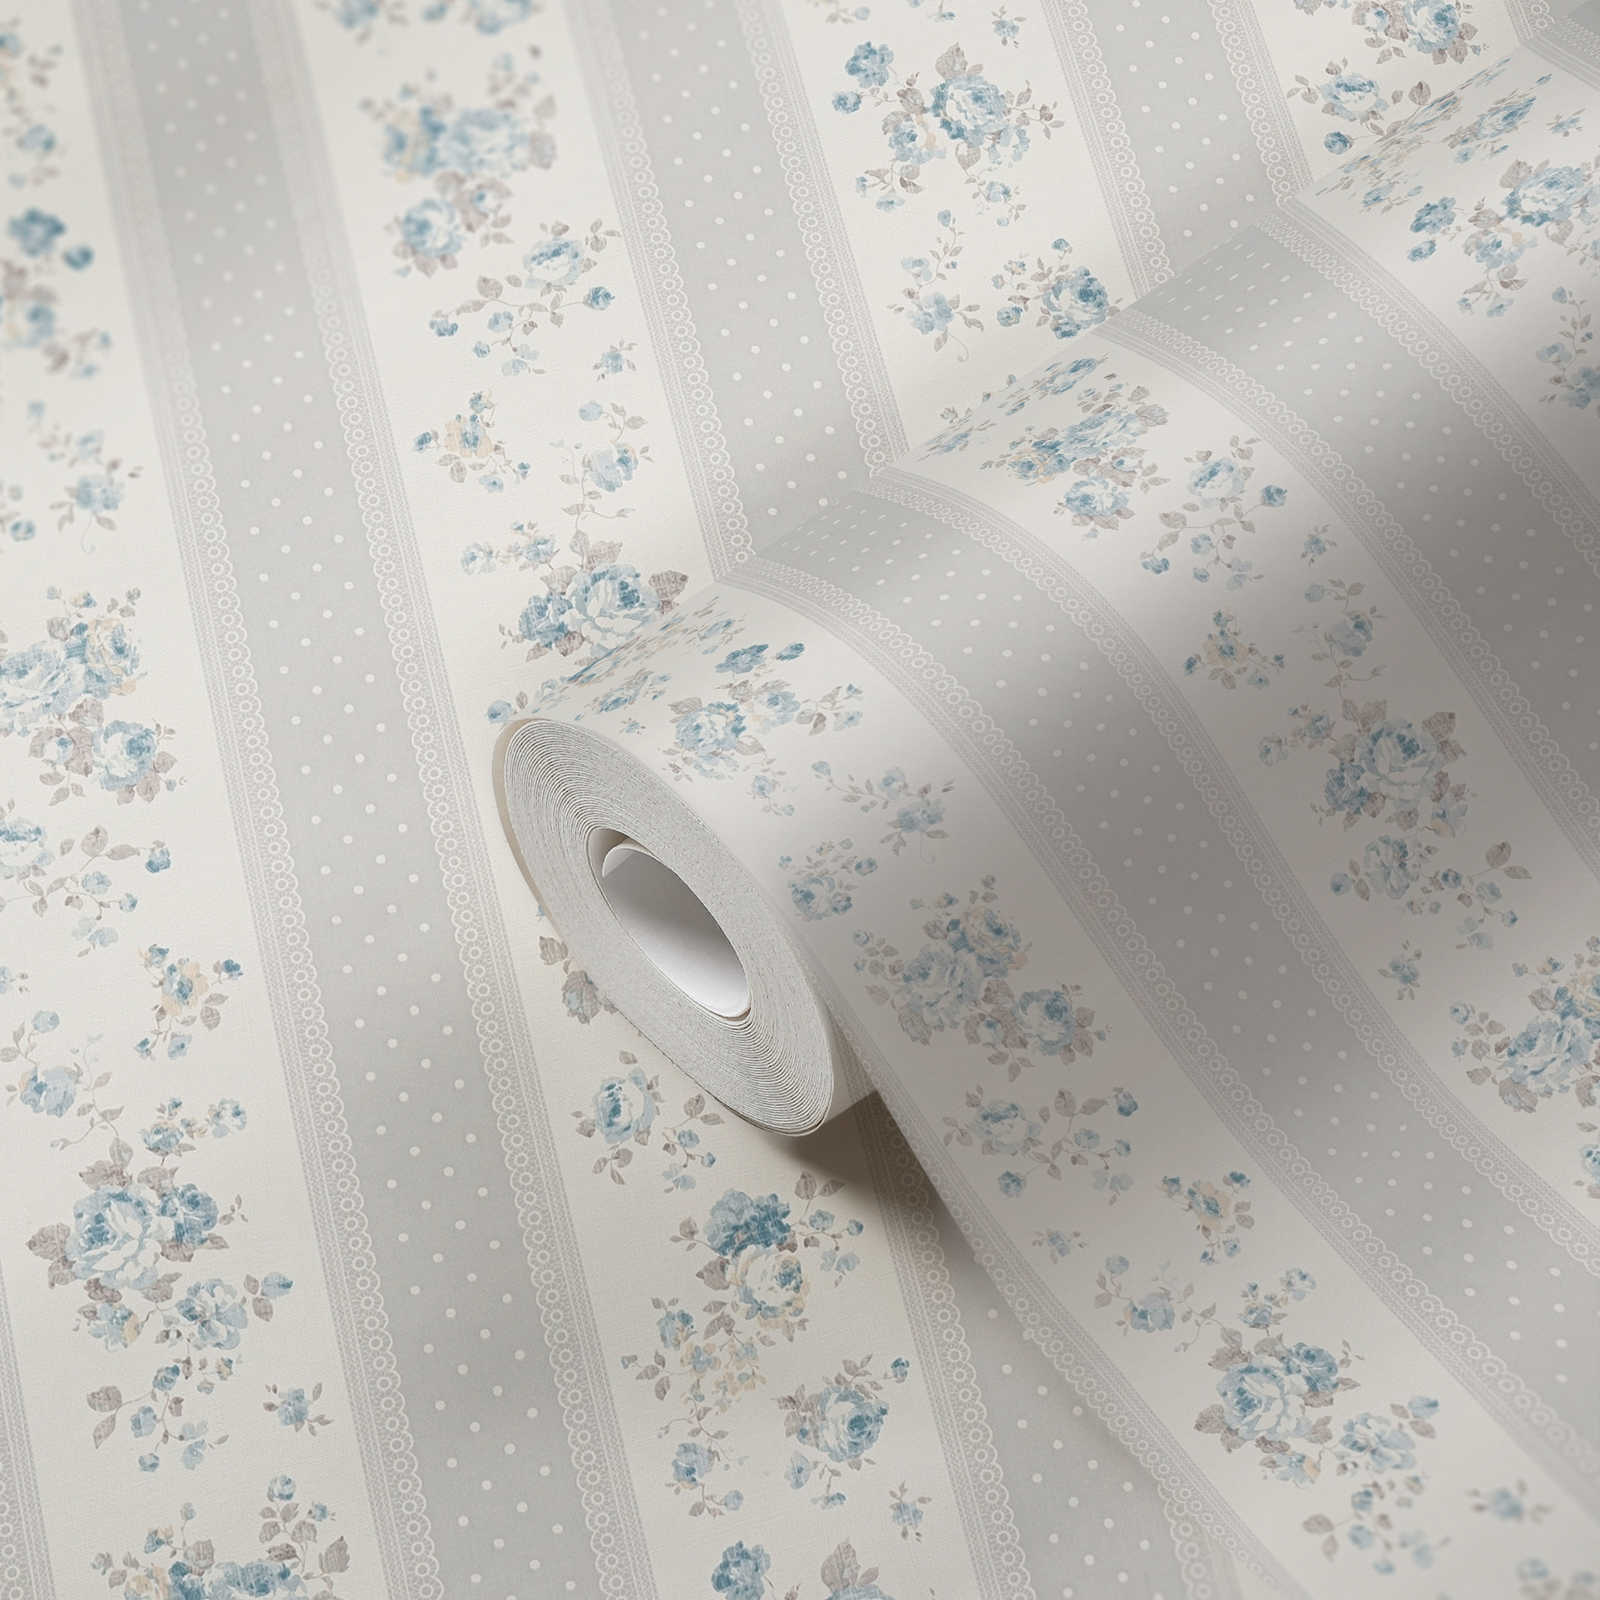             Carta da parati in tessuto non tessuto a righe punteggiate e floreali - grigio, bianco, blu
        